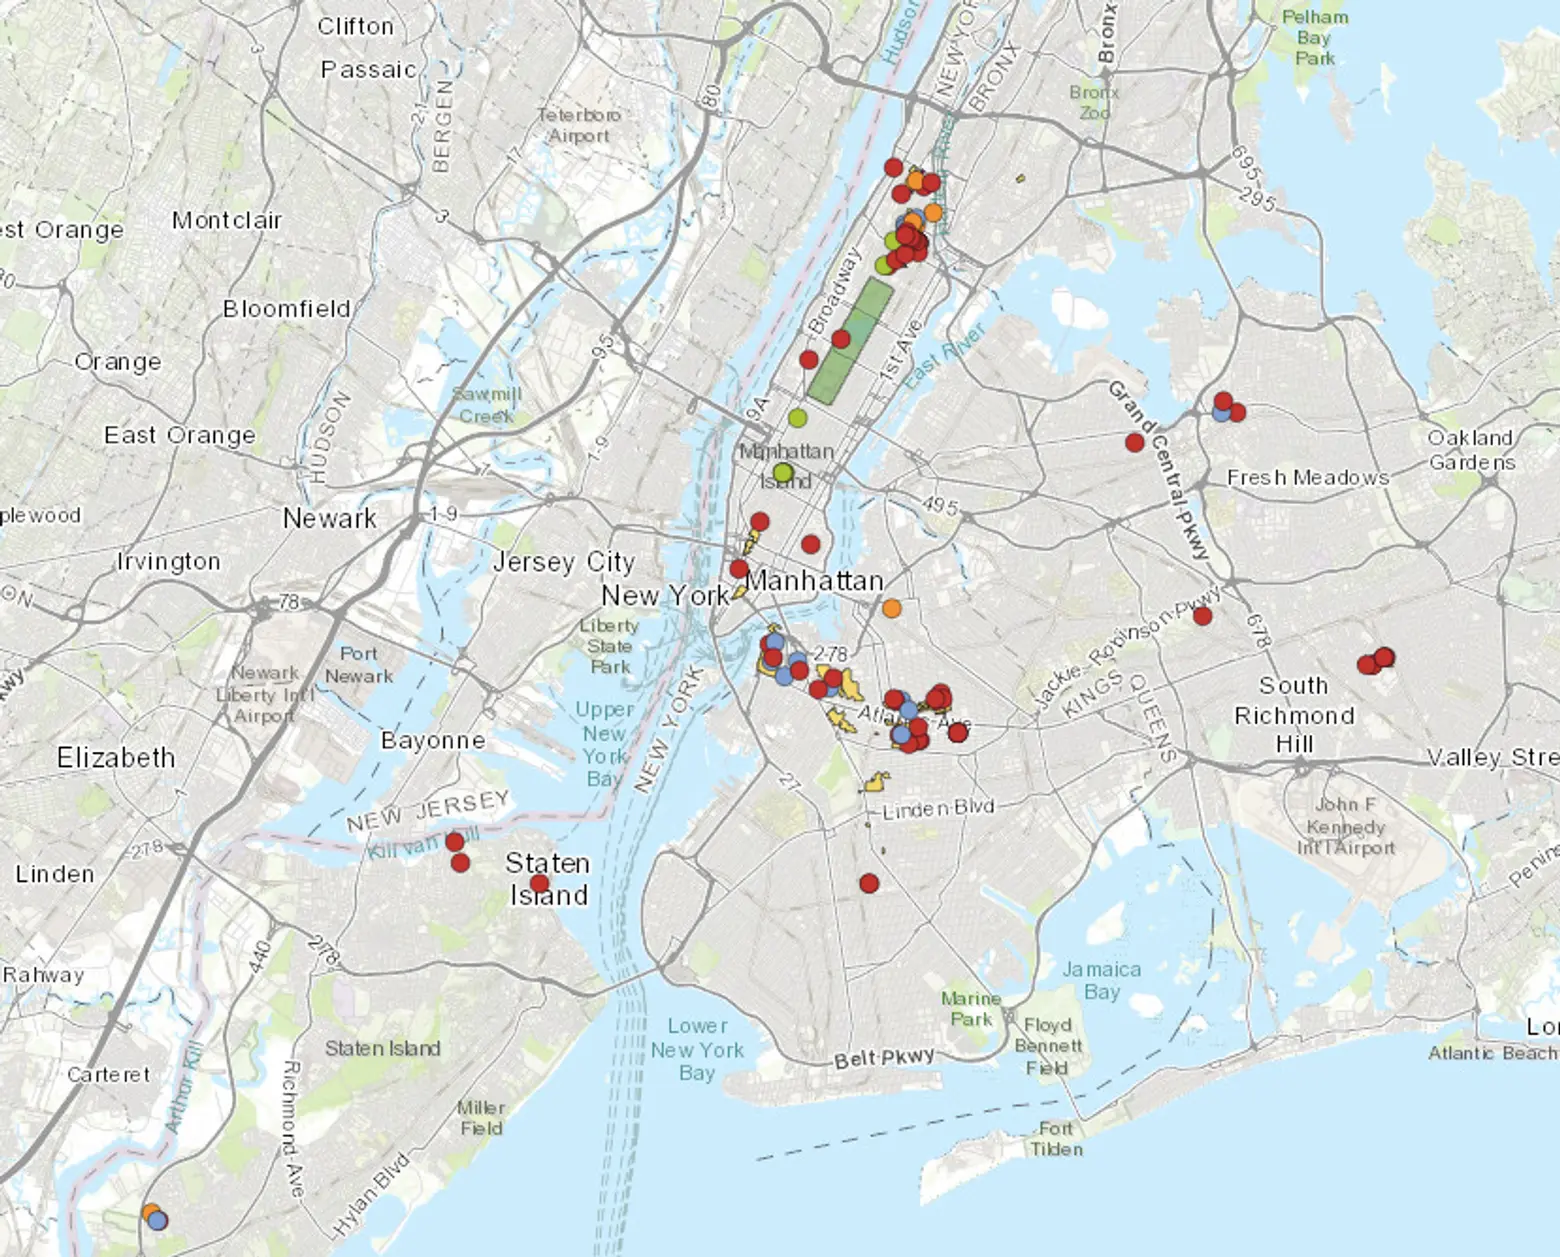 map of new york landmarks